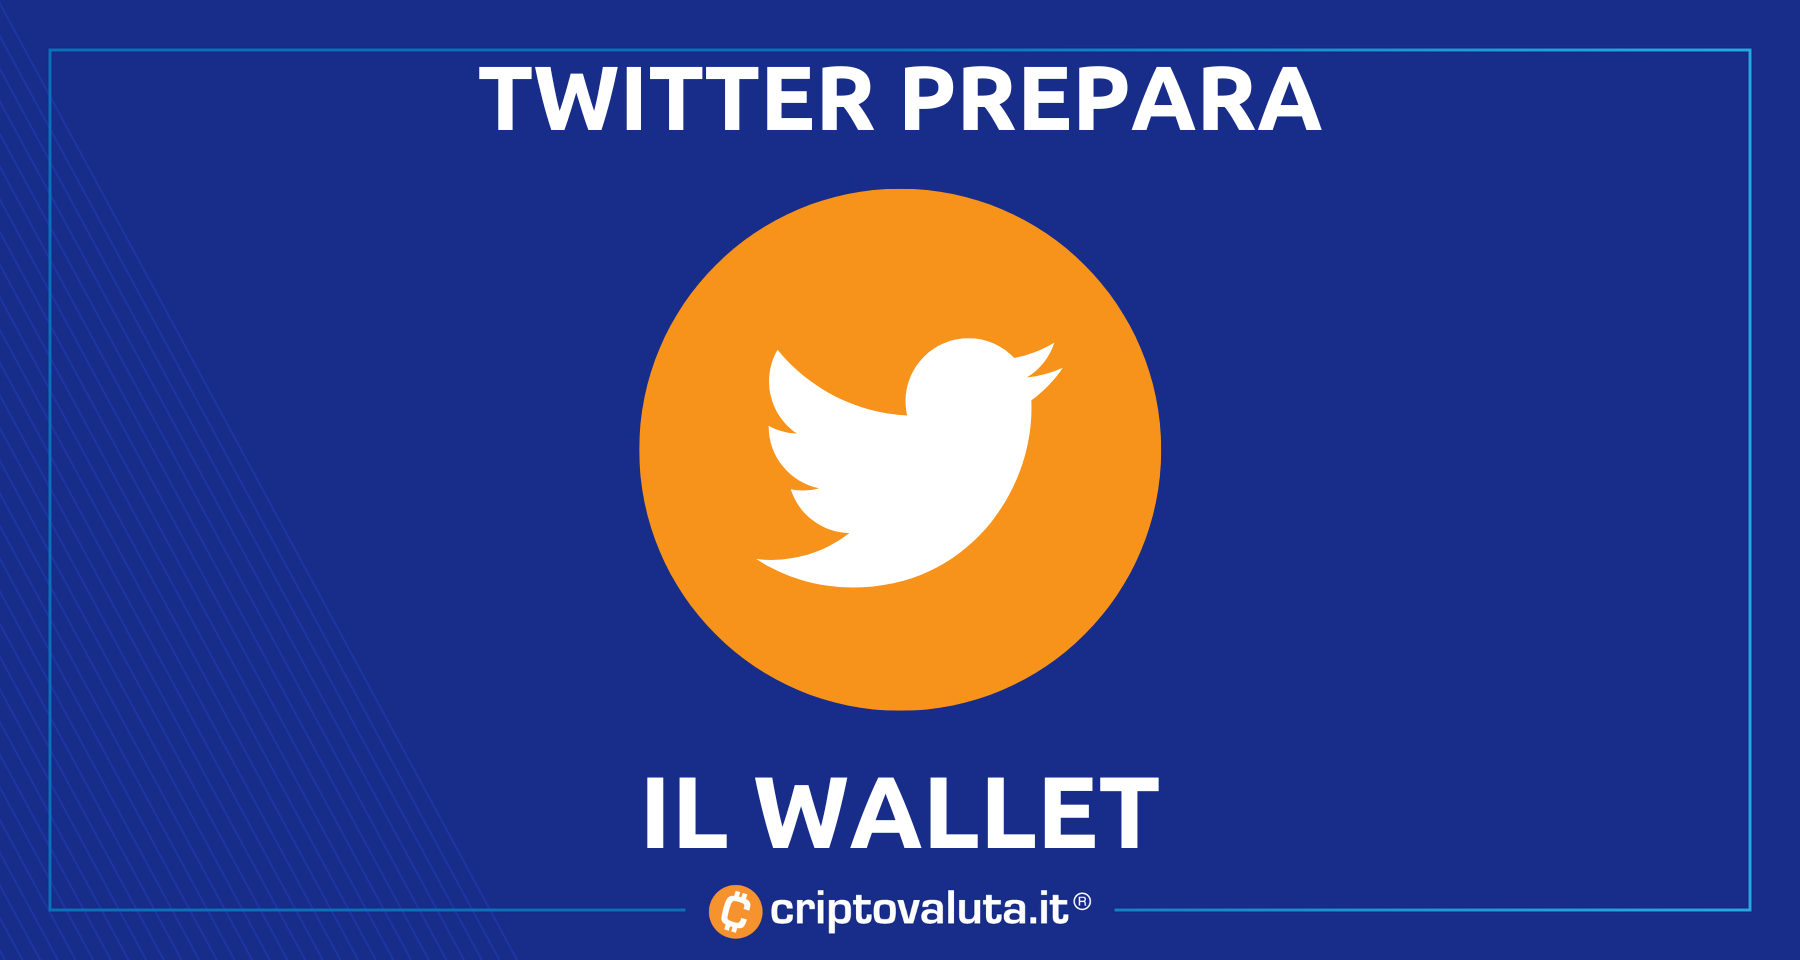 Twitter: si lavora ad un wallet Bitcoin e crypto | ecco le prime indiscrezioni